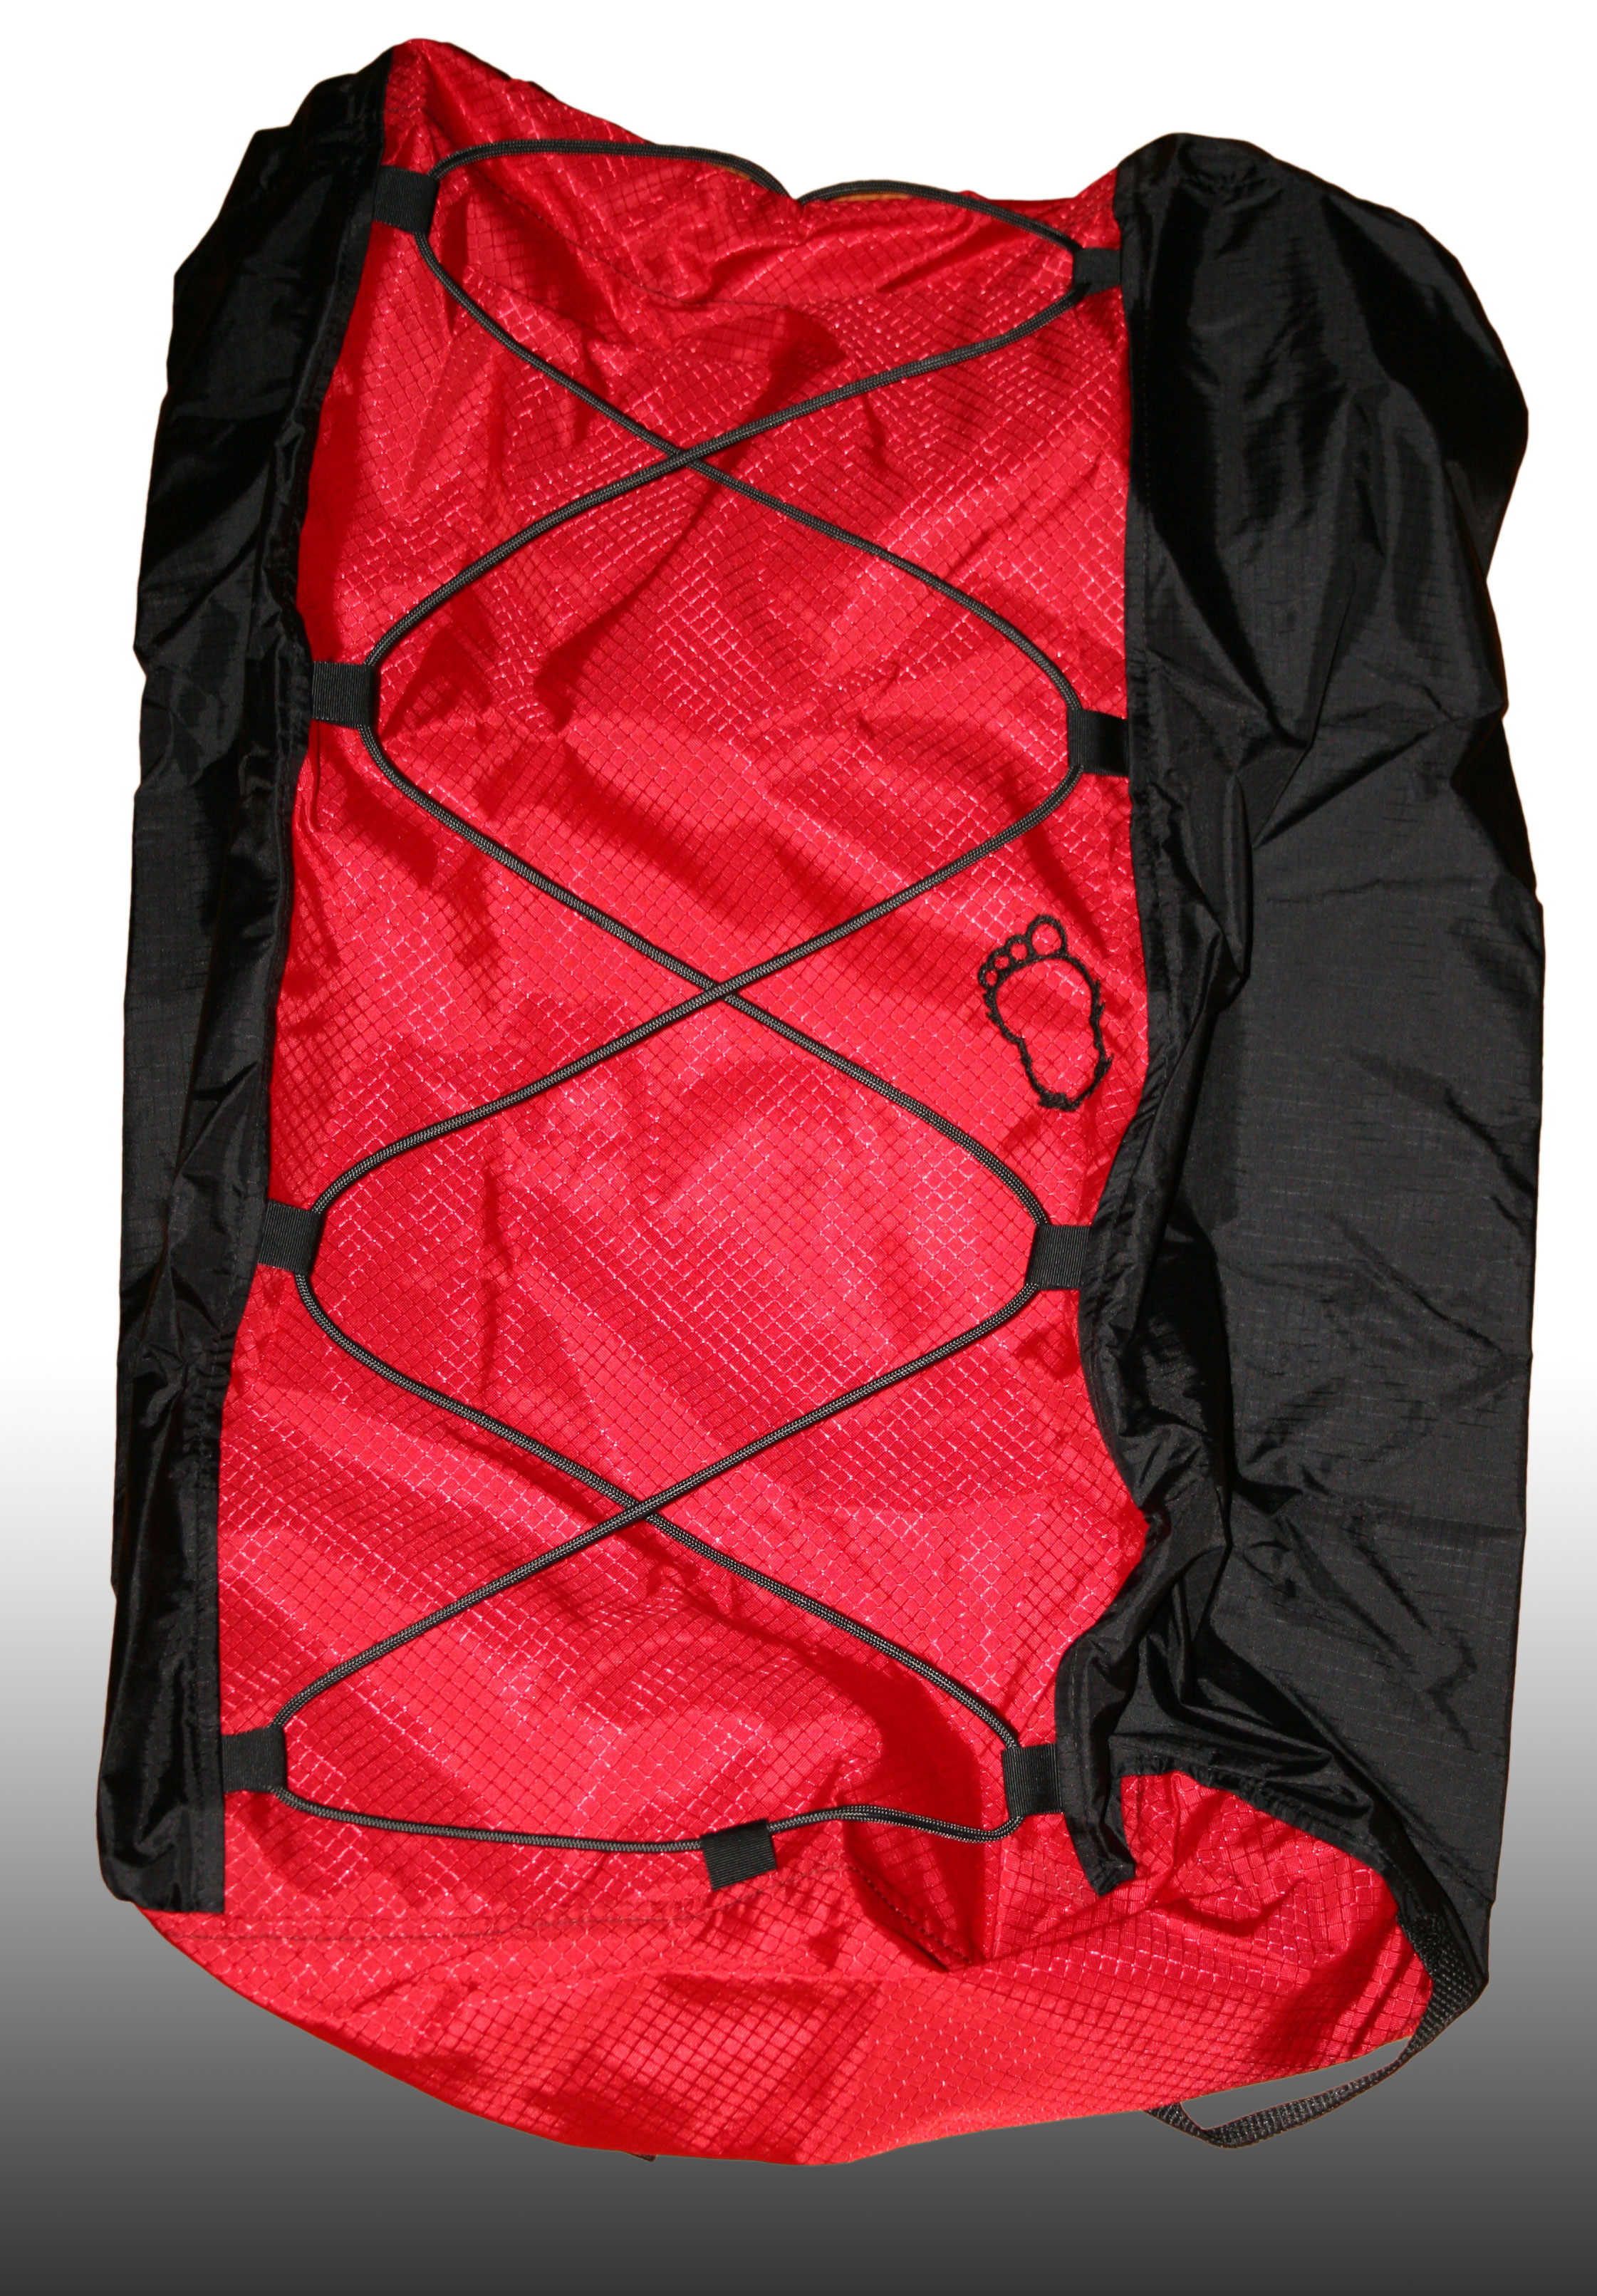 Red-stash-bag